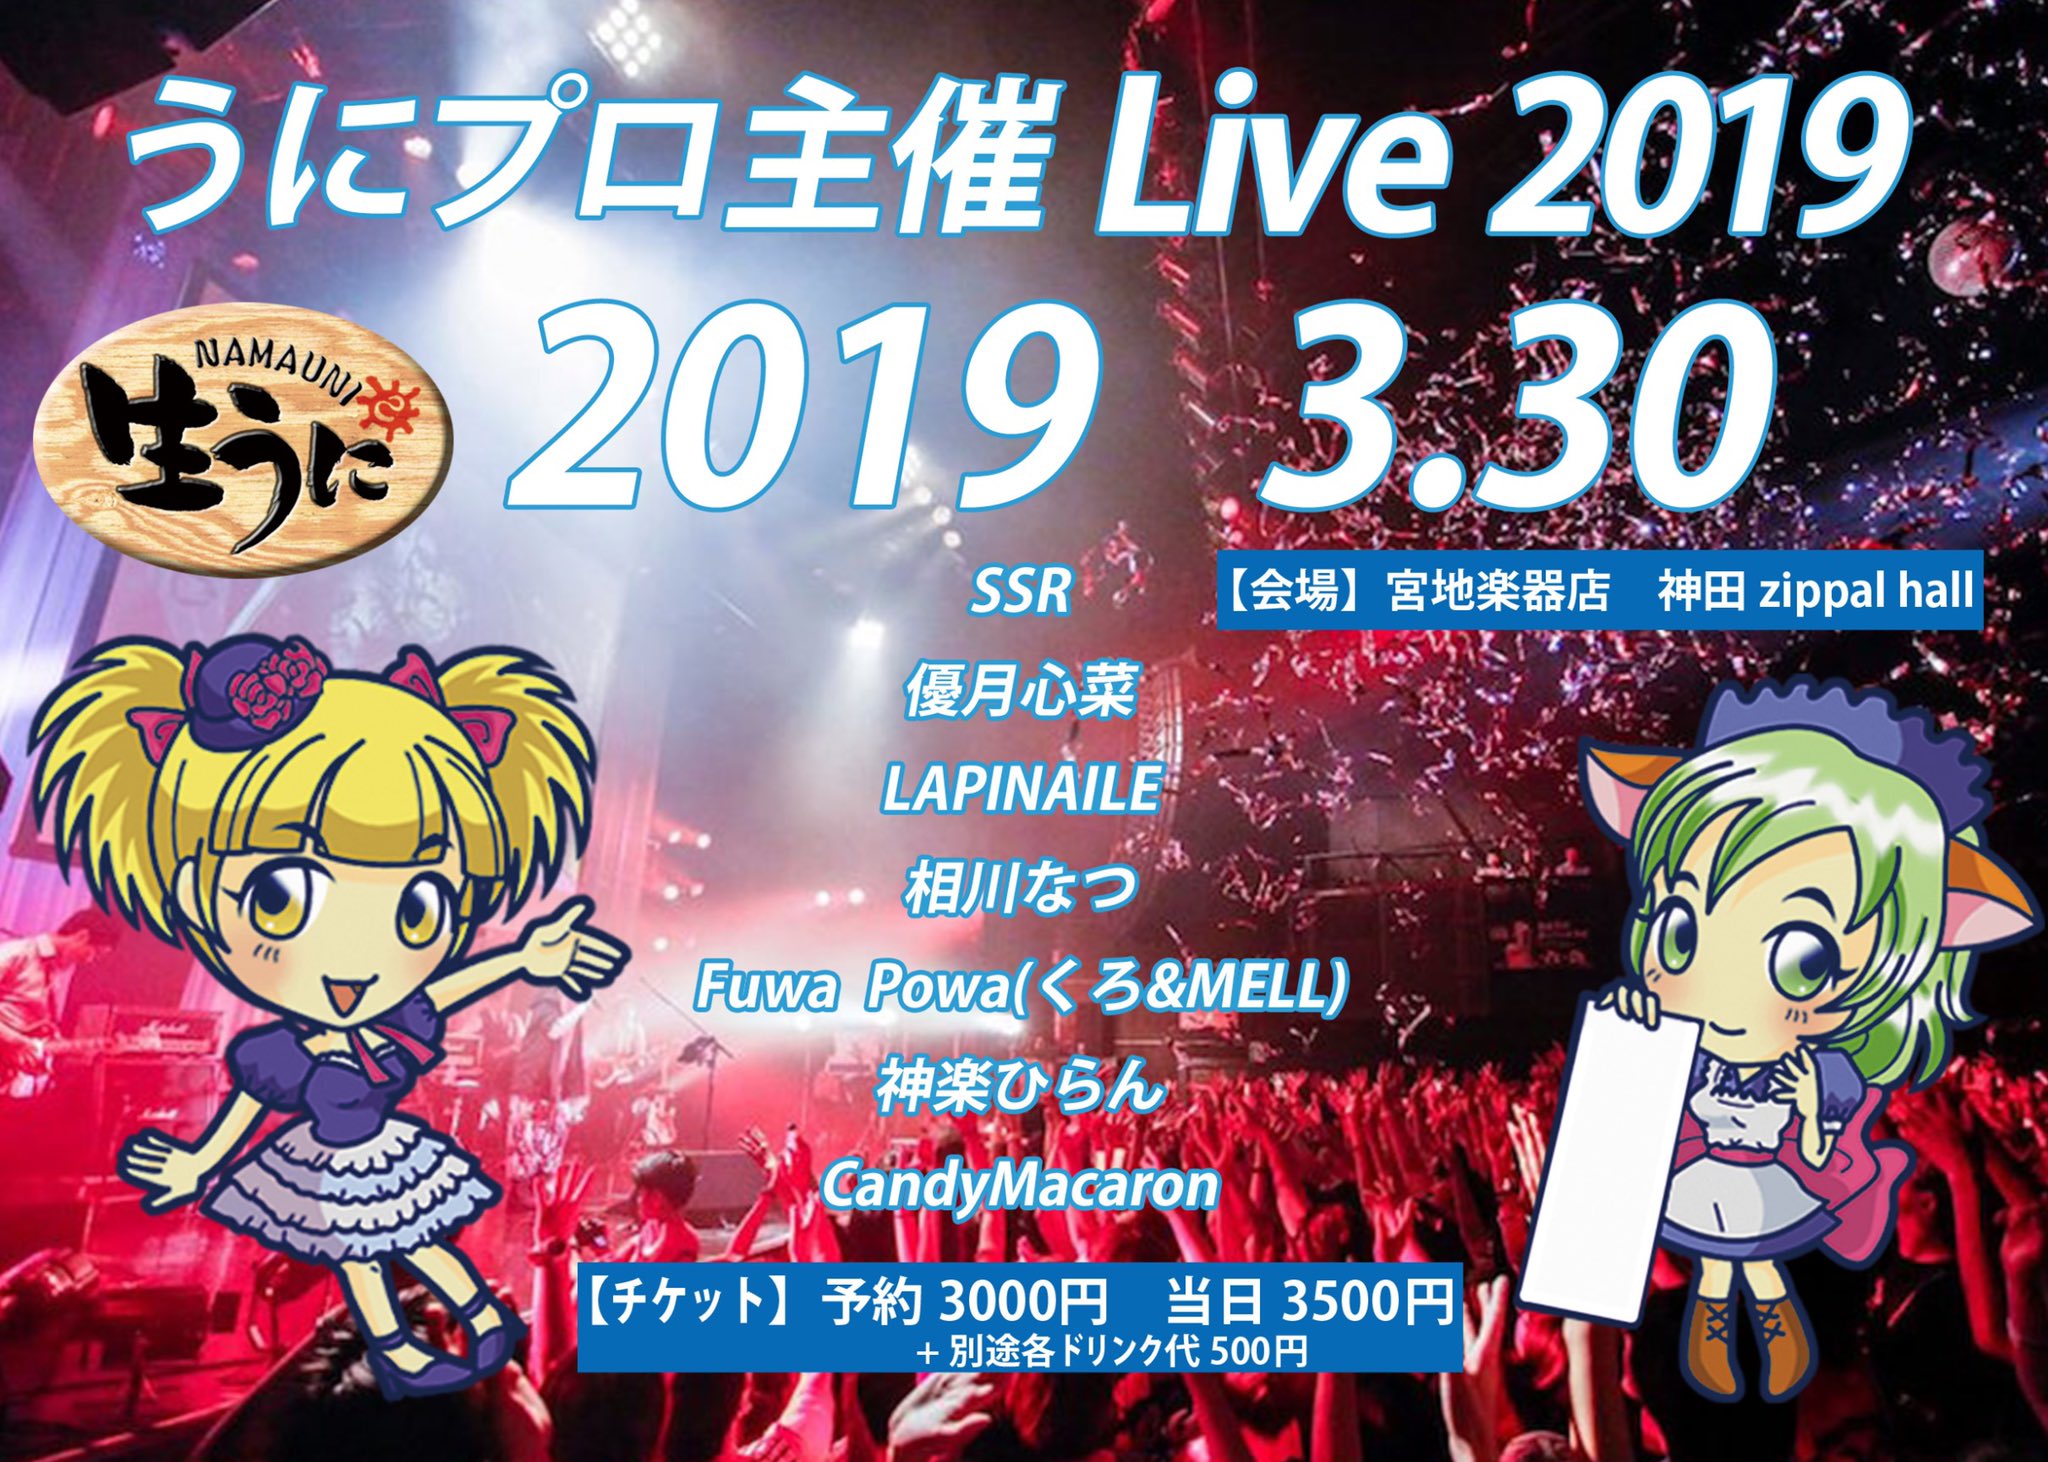 3月30日(土)「うにプロ主催 Live 2019」に出演します!!!